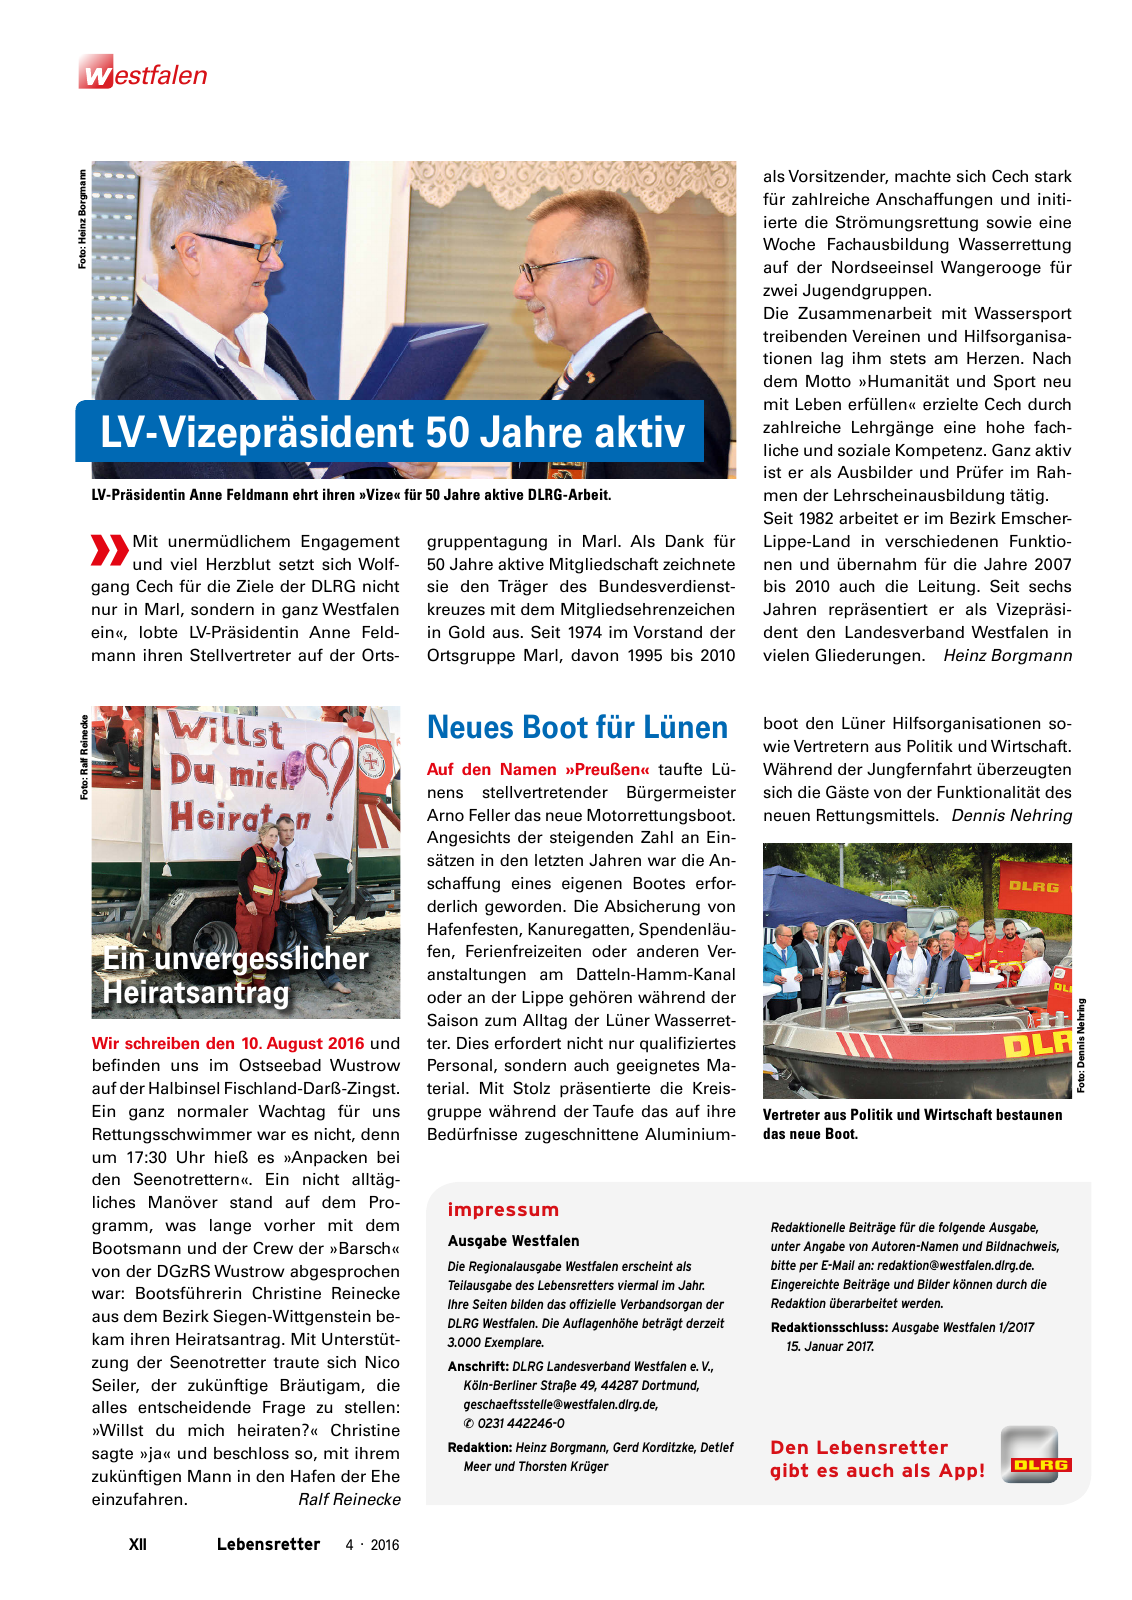 Vorschau Lebensretter 4/2016 - Regionalausgabe Westfalen Seite 14